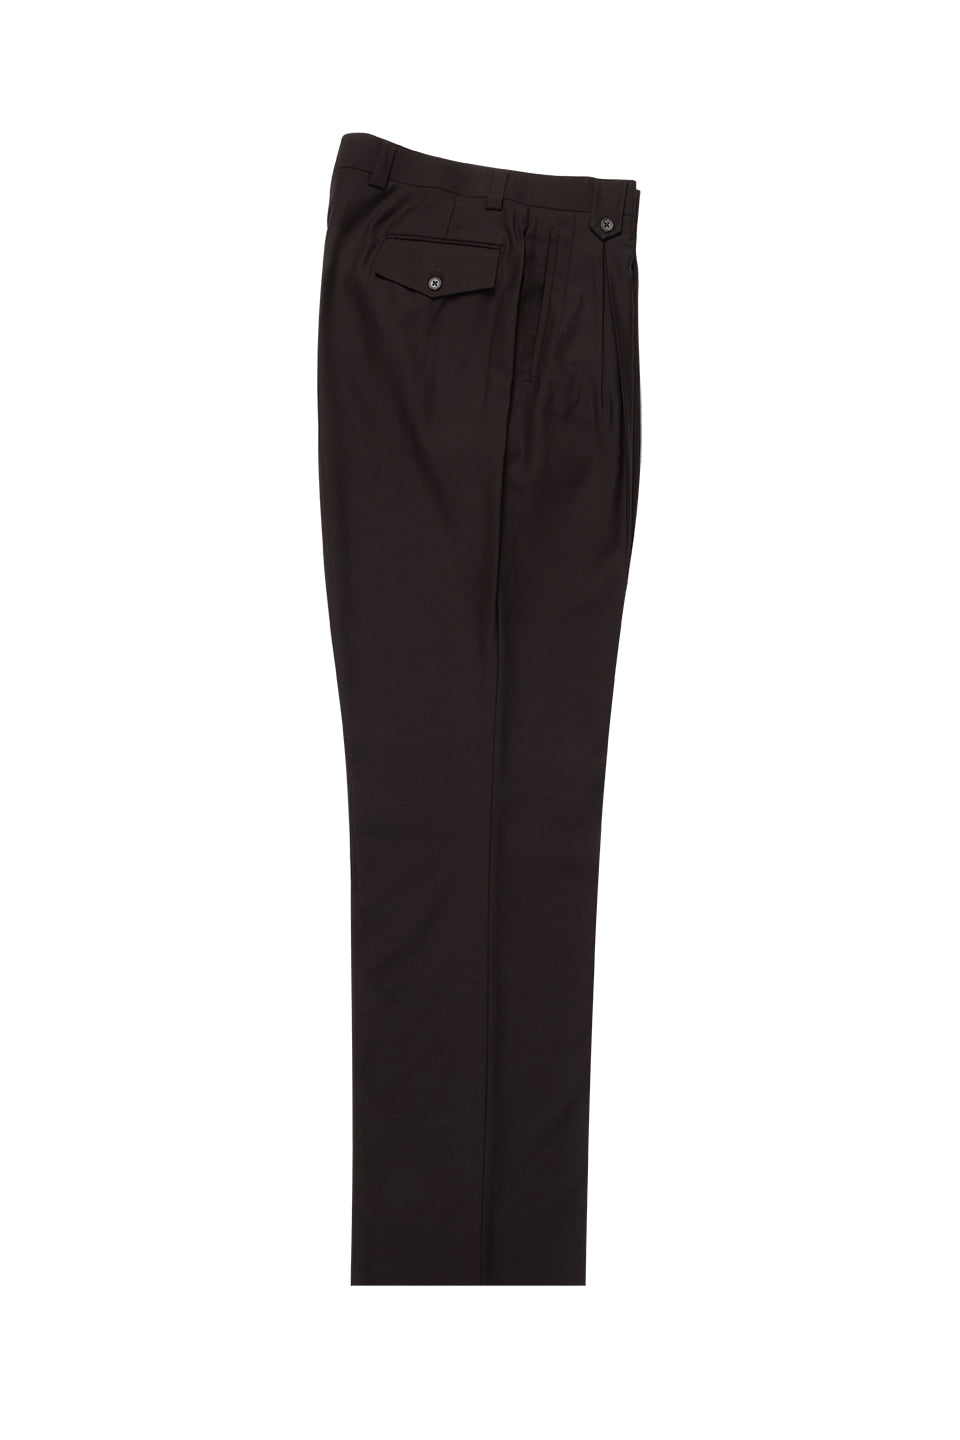 Brown Wide Leg Wool Dress Pant 2586/2576 by Tiglio Luxe TIG1003 | Tiglio